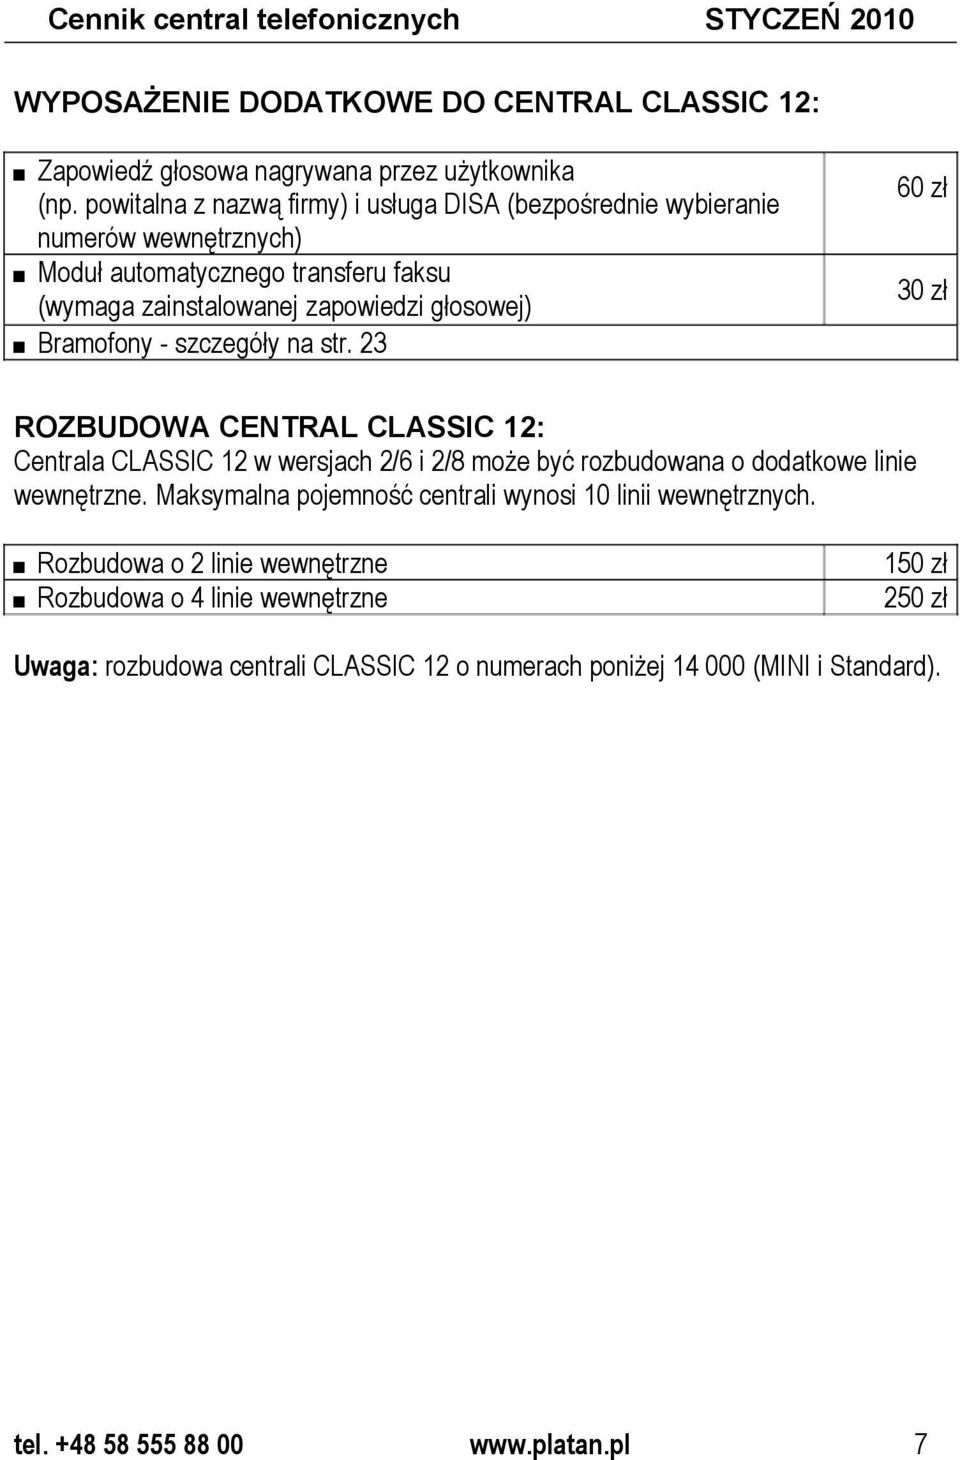 szczegóły na str. 23 60 zł 30 zł ROZBUDOWA CENTRAL CLASSIC 12: Centrala CLASSIC 12 w wersjach 2/6 i 2/8 może być rozbudowana o dodatkowe linie wewnętrzne.